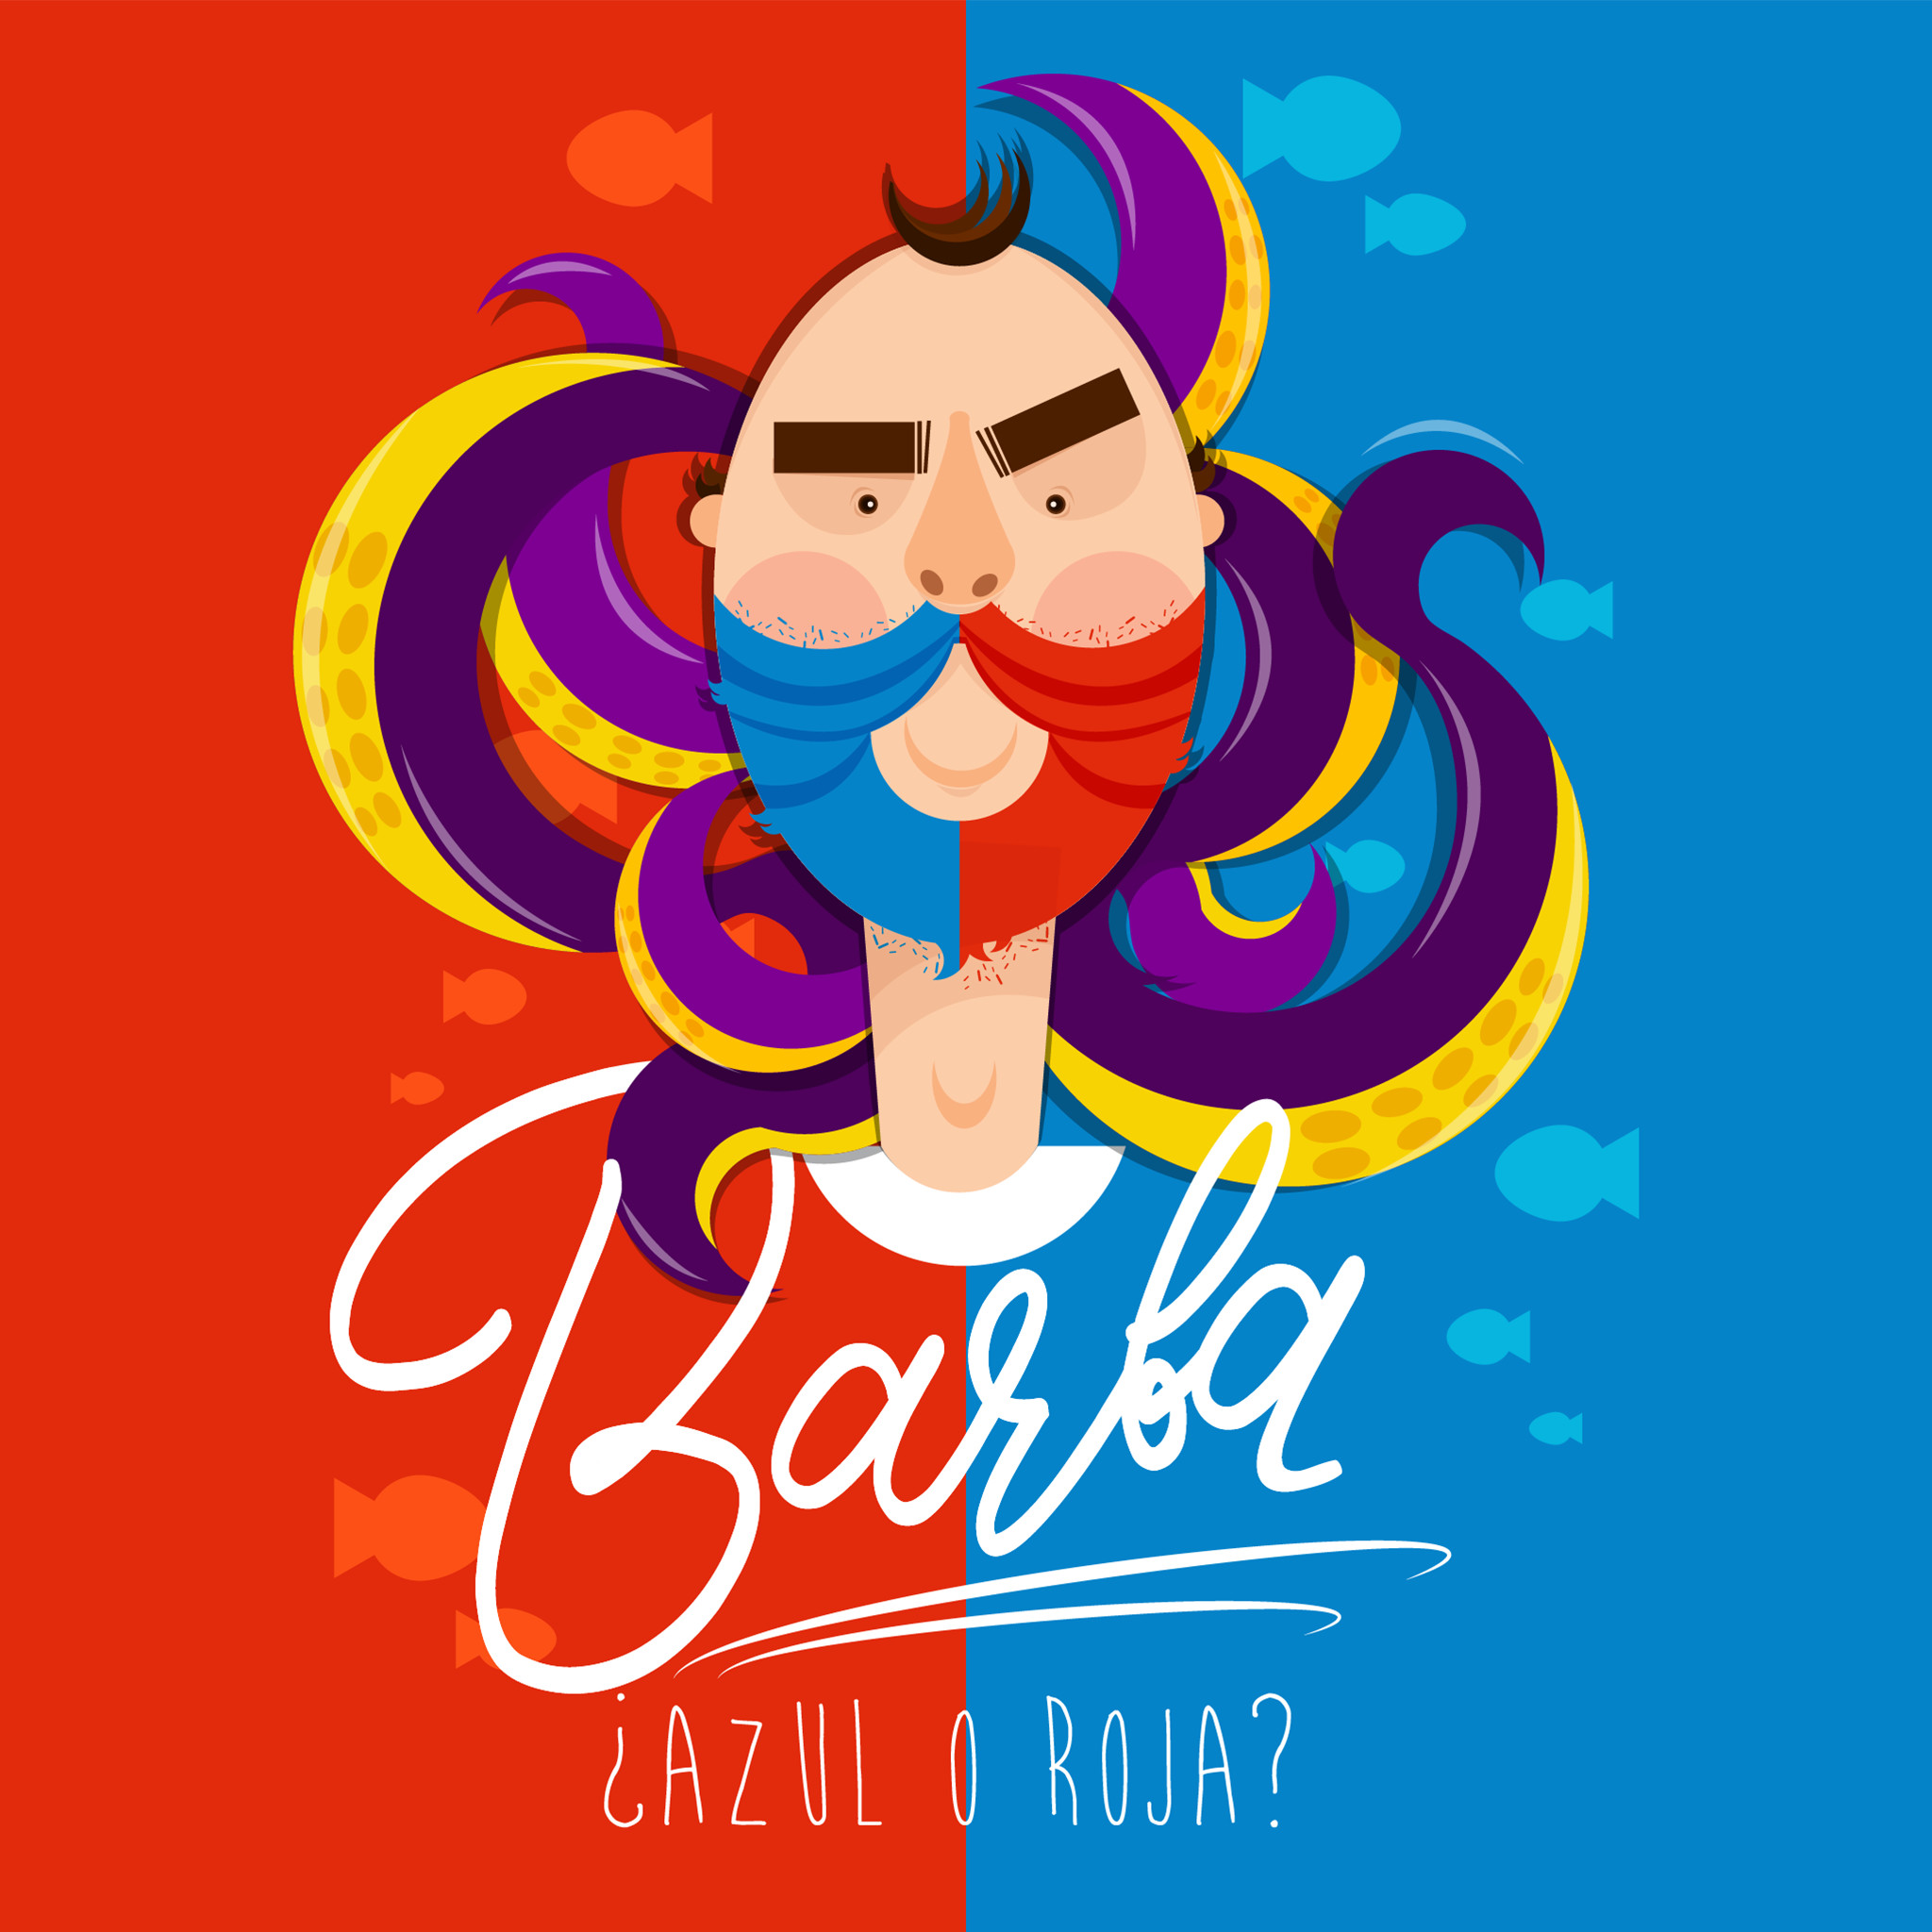 2048x2048 Barba by Veruska Velazco